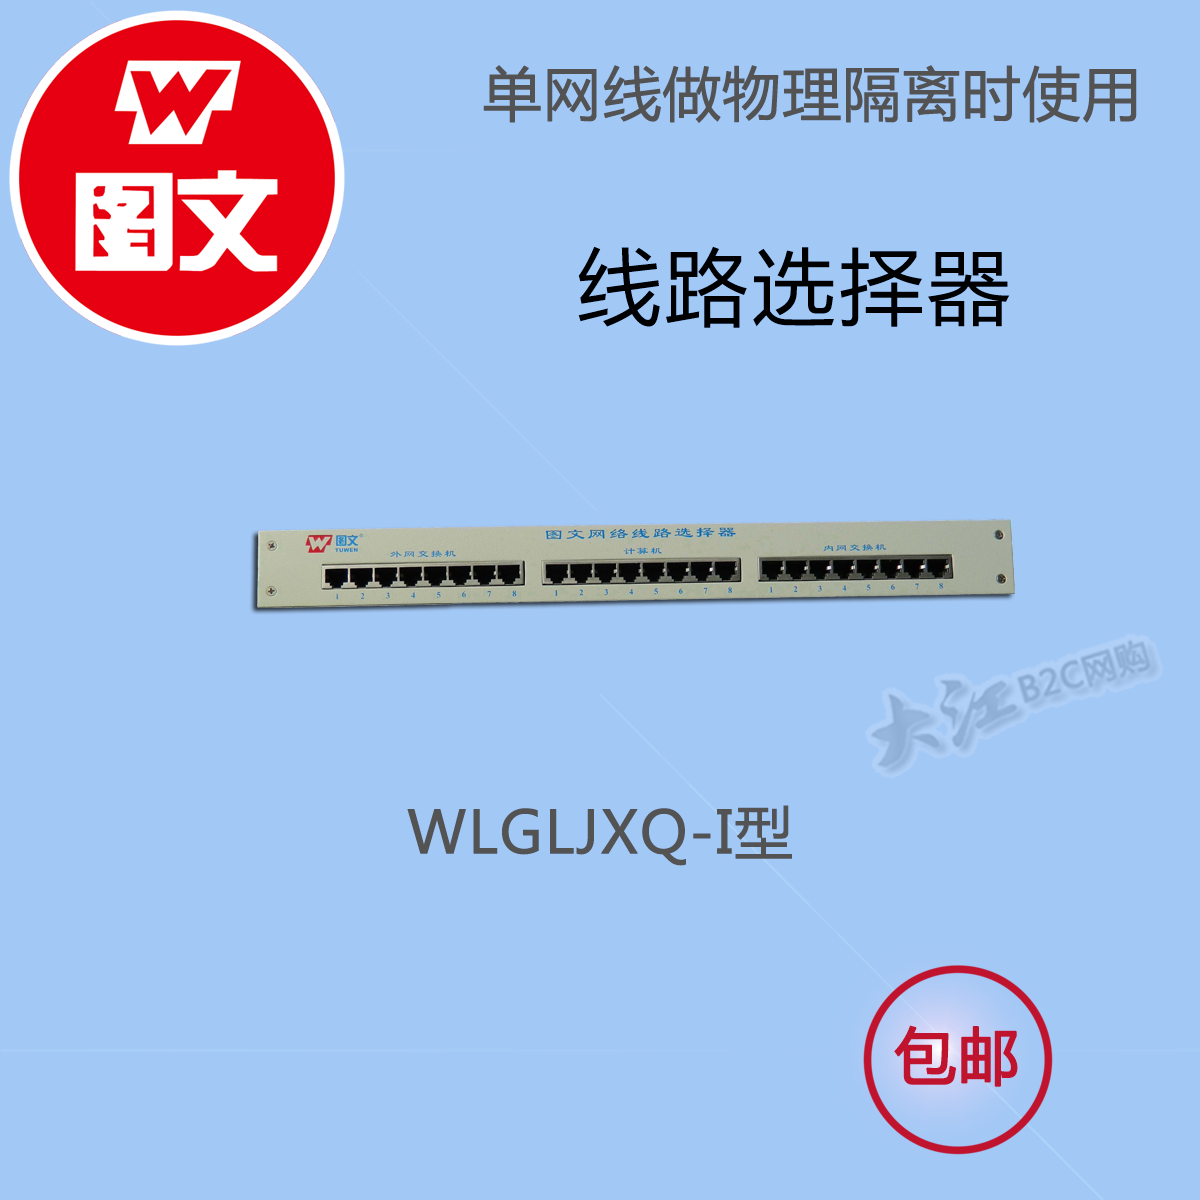 隔离卡单网线配套产品、WLGLJXQ-I型网络线路选择器，双网络